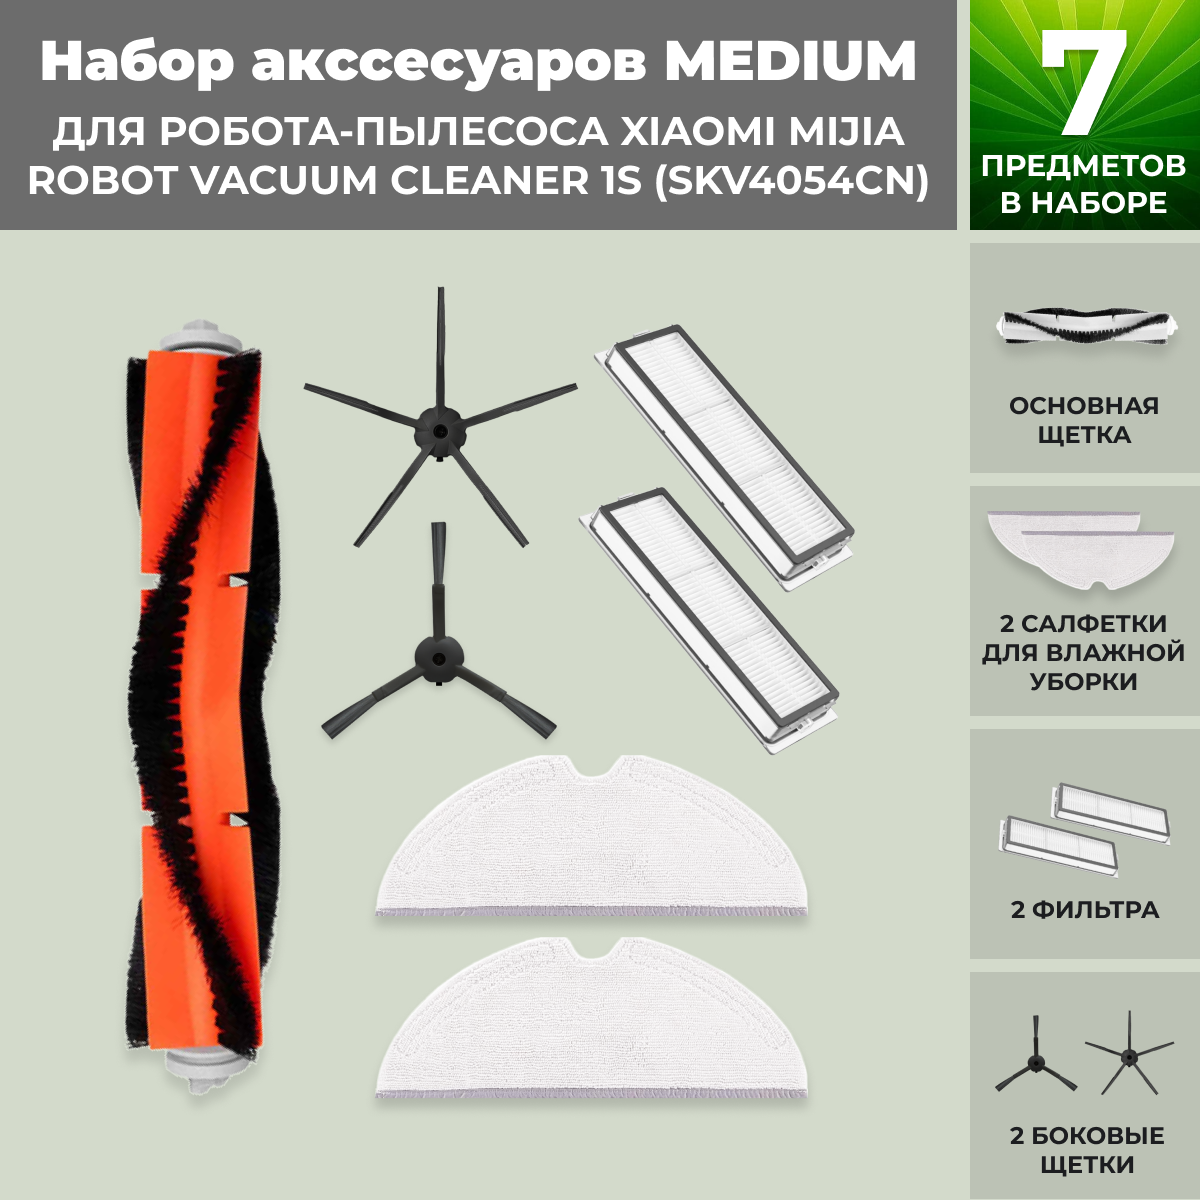 Набор аксессуаров Medium для робота-пылесоса Xiaomi Mijia Robot Vacuum Cleaner 1S (SKV4054CN), черные боковые